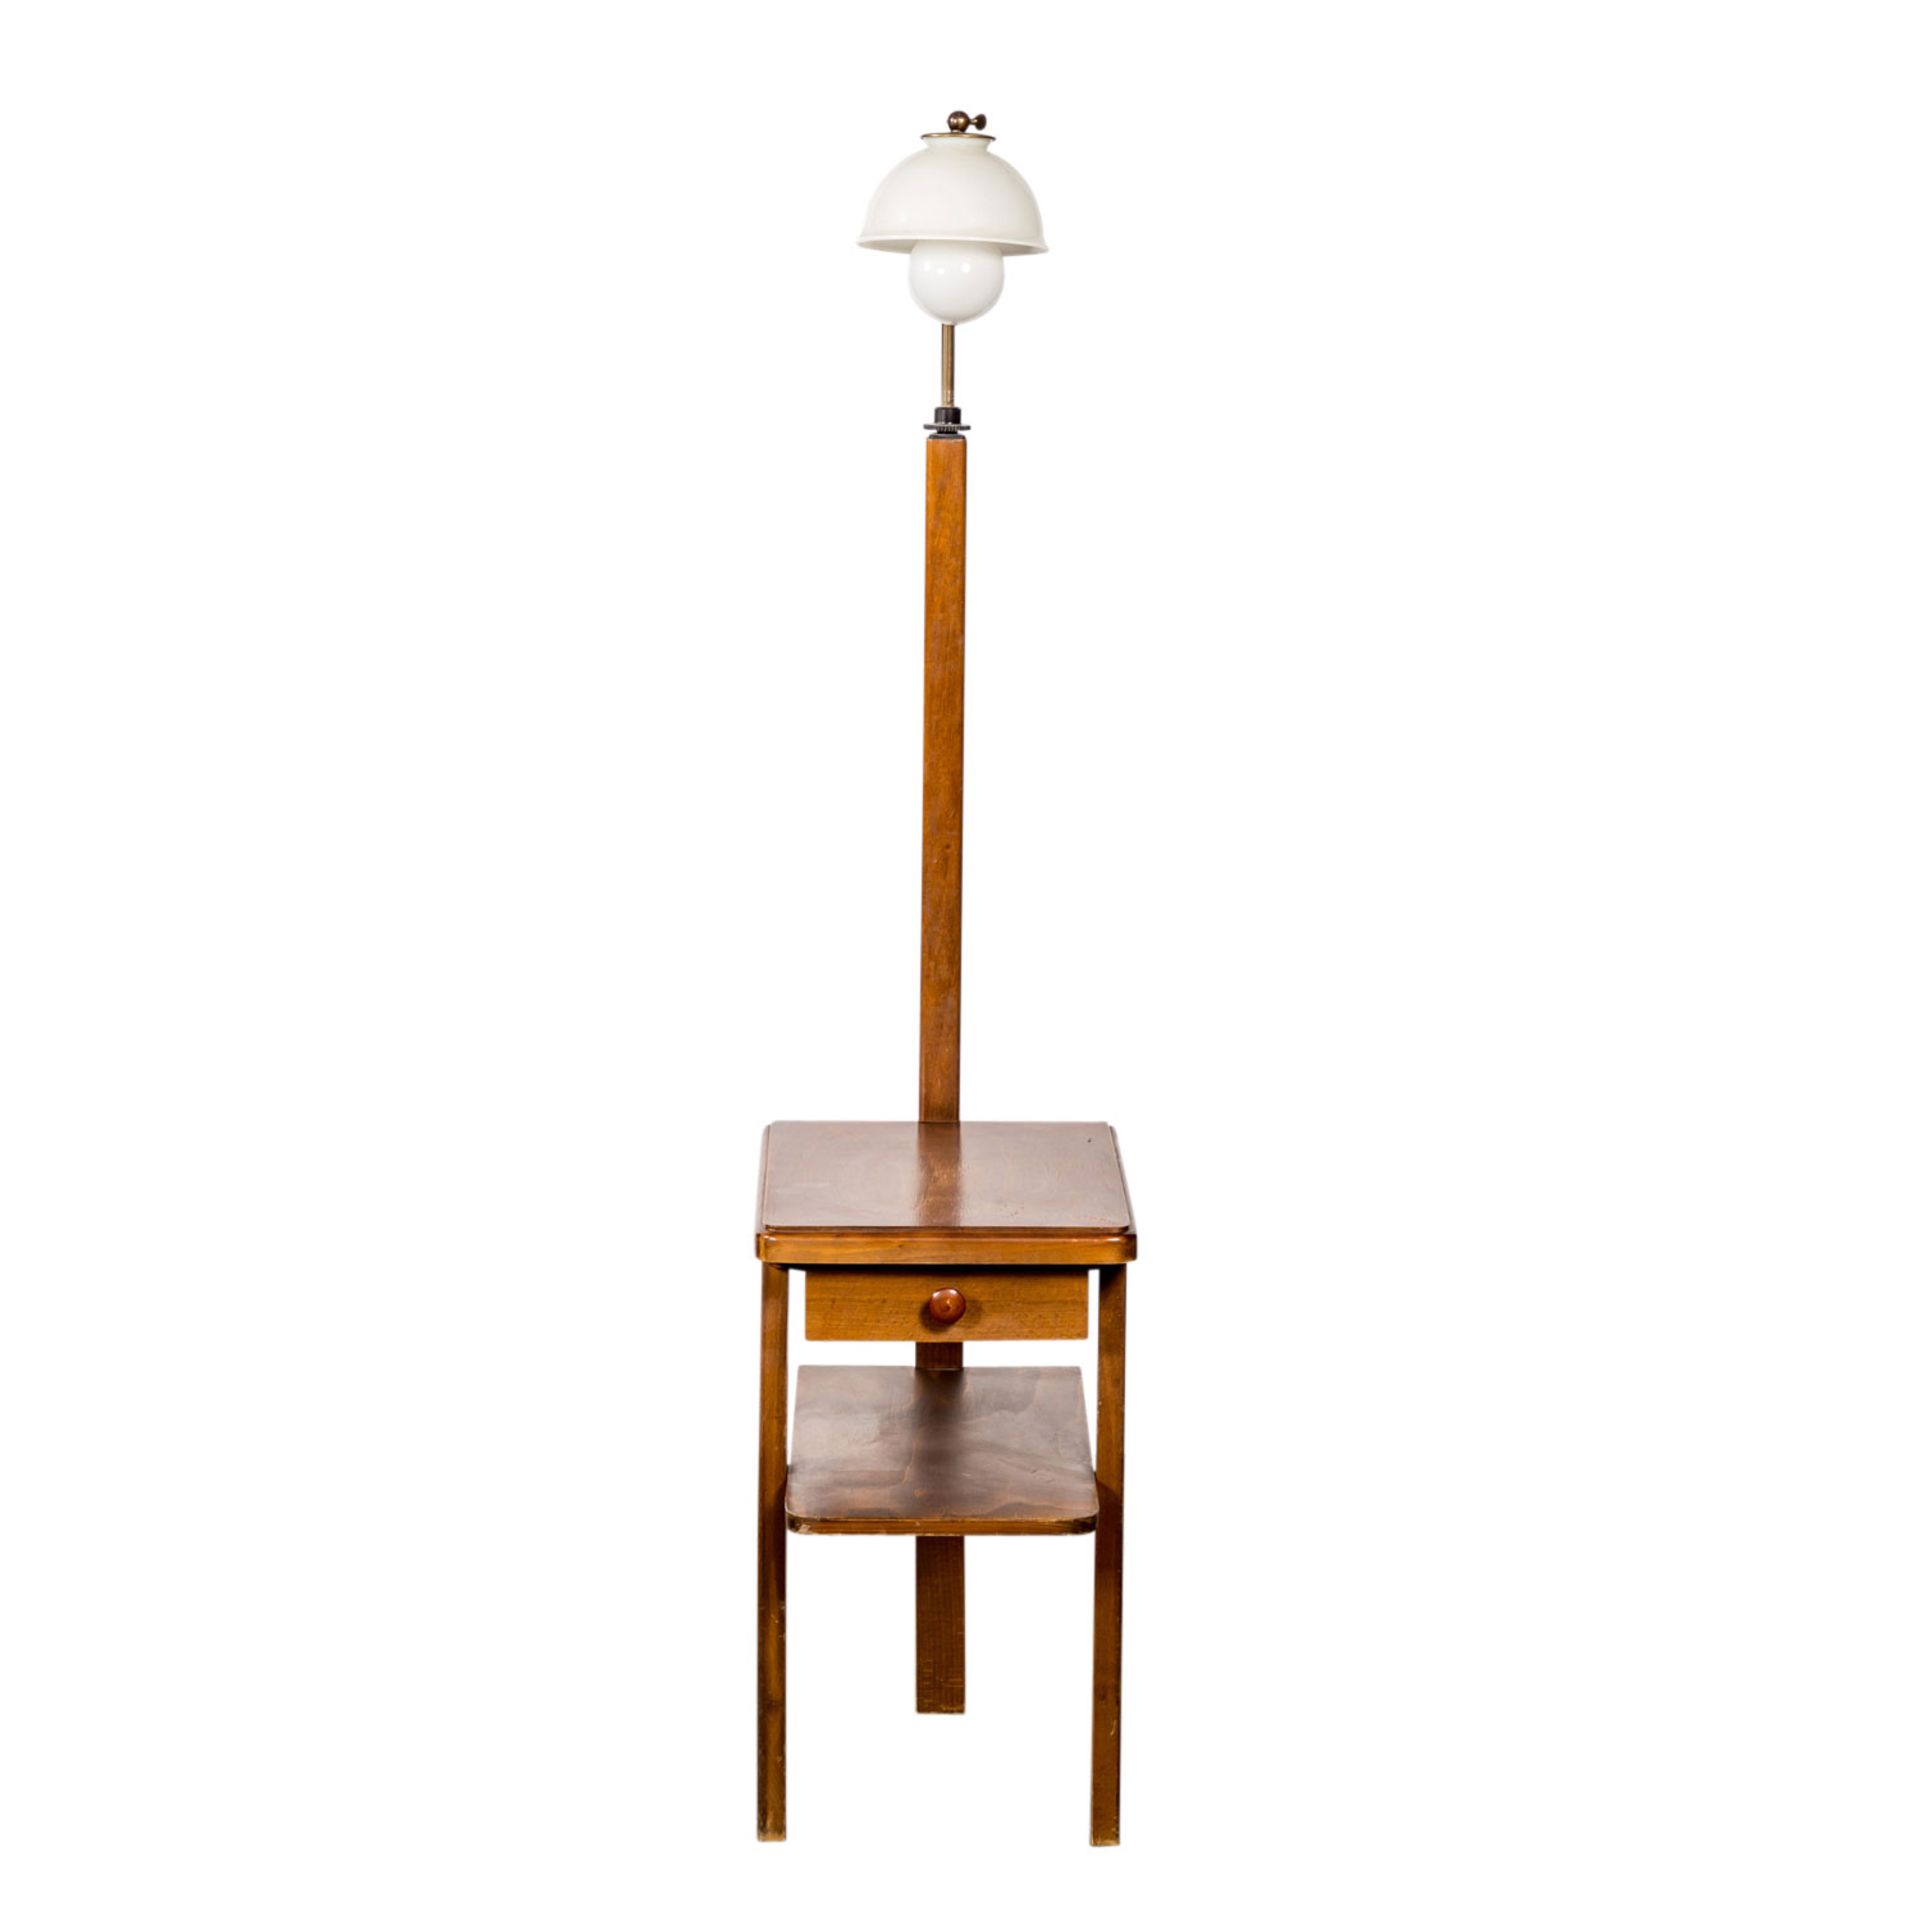 KURIOSER BEISTELLTISCH 60er Jahre, Holz, Tisch mit einer Schublade, höhenverstellbarer Lampenfuß, - Bild 2 aus 4